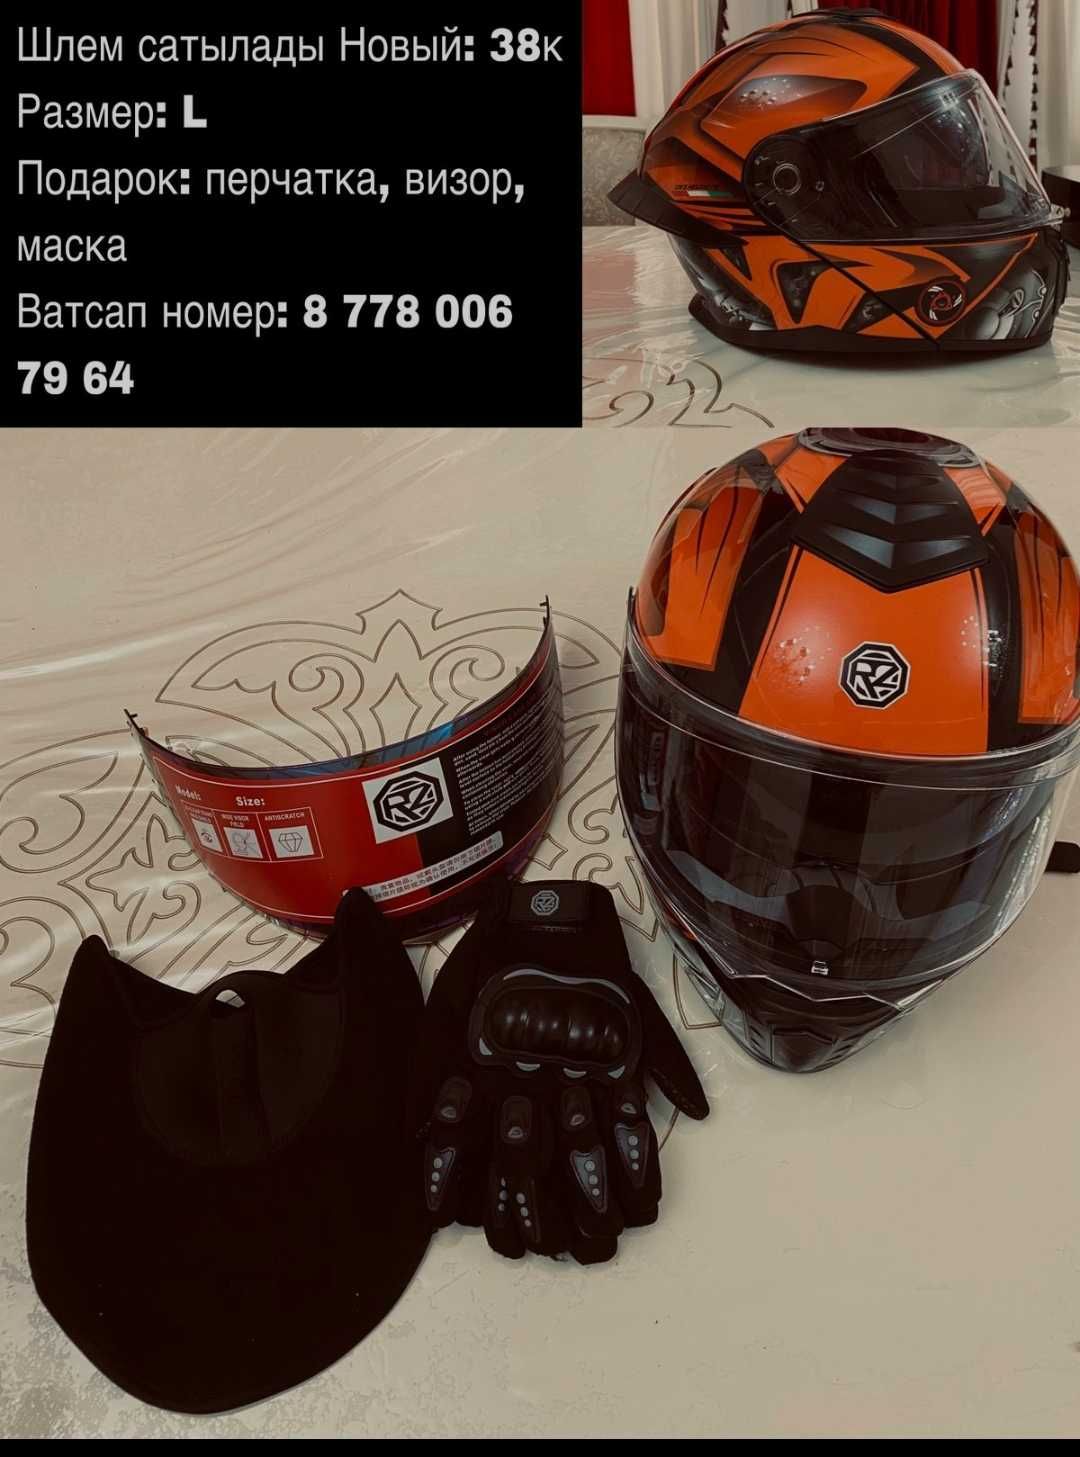 Продается новый шлем для мотоциклиста, мопеда